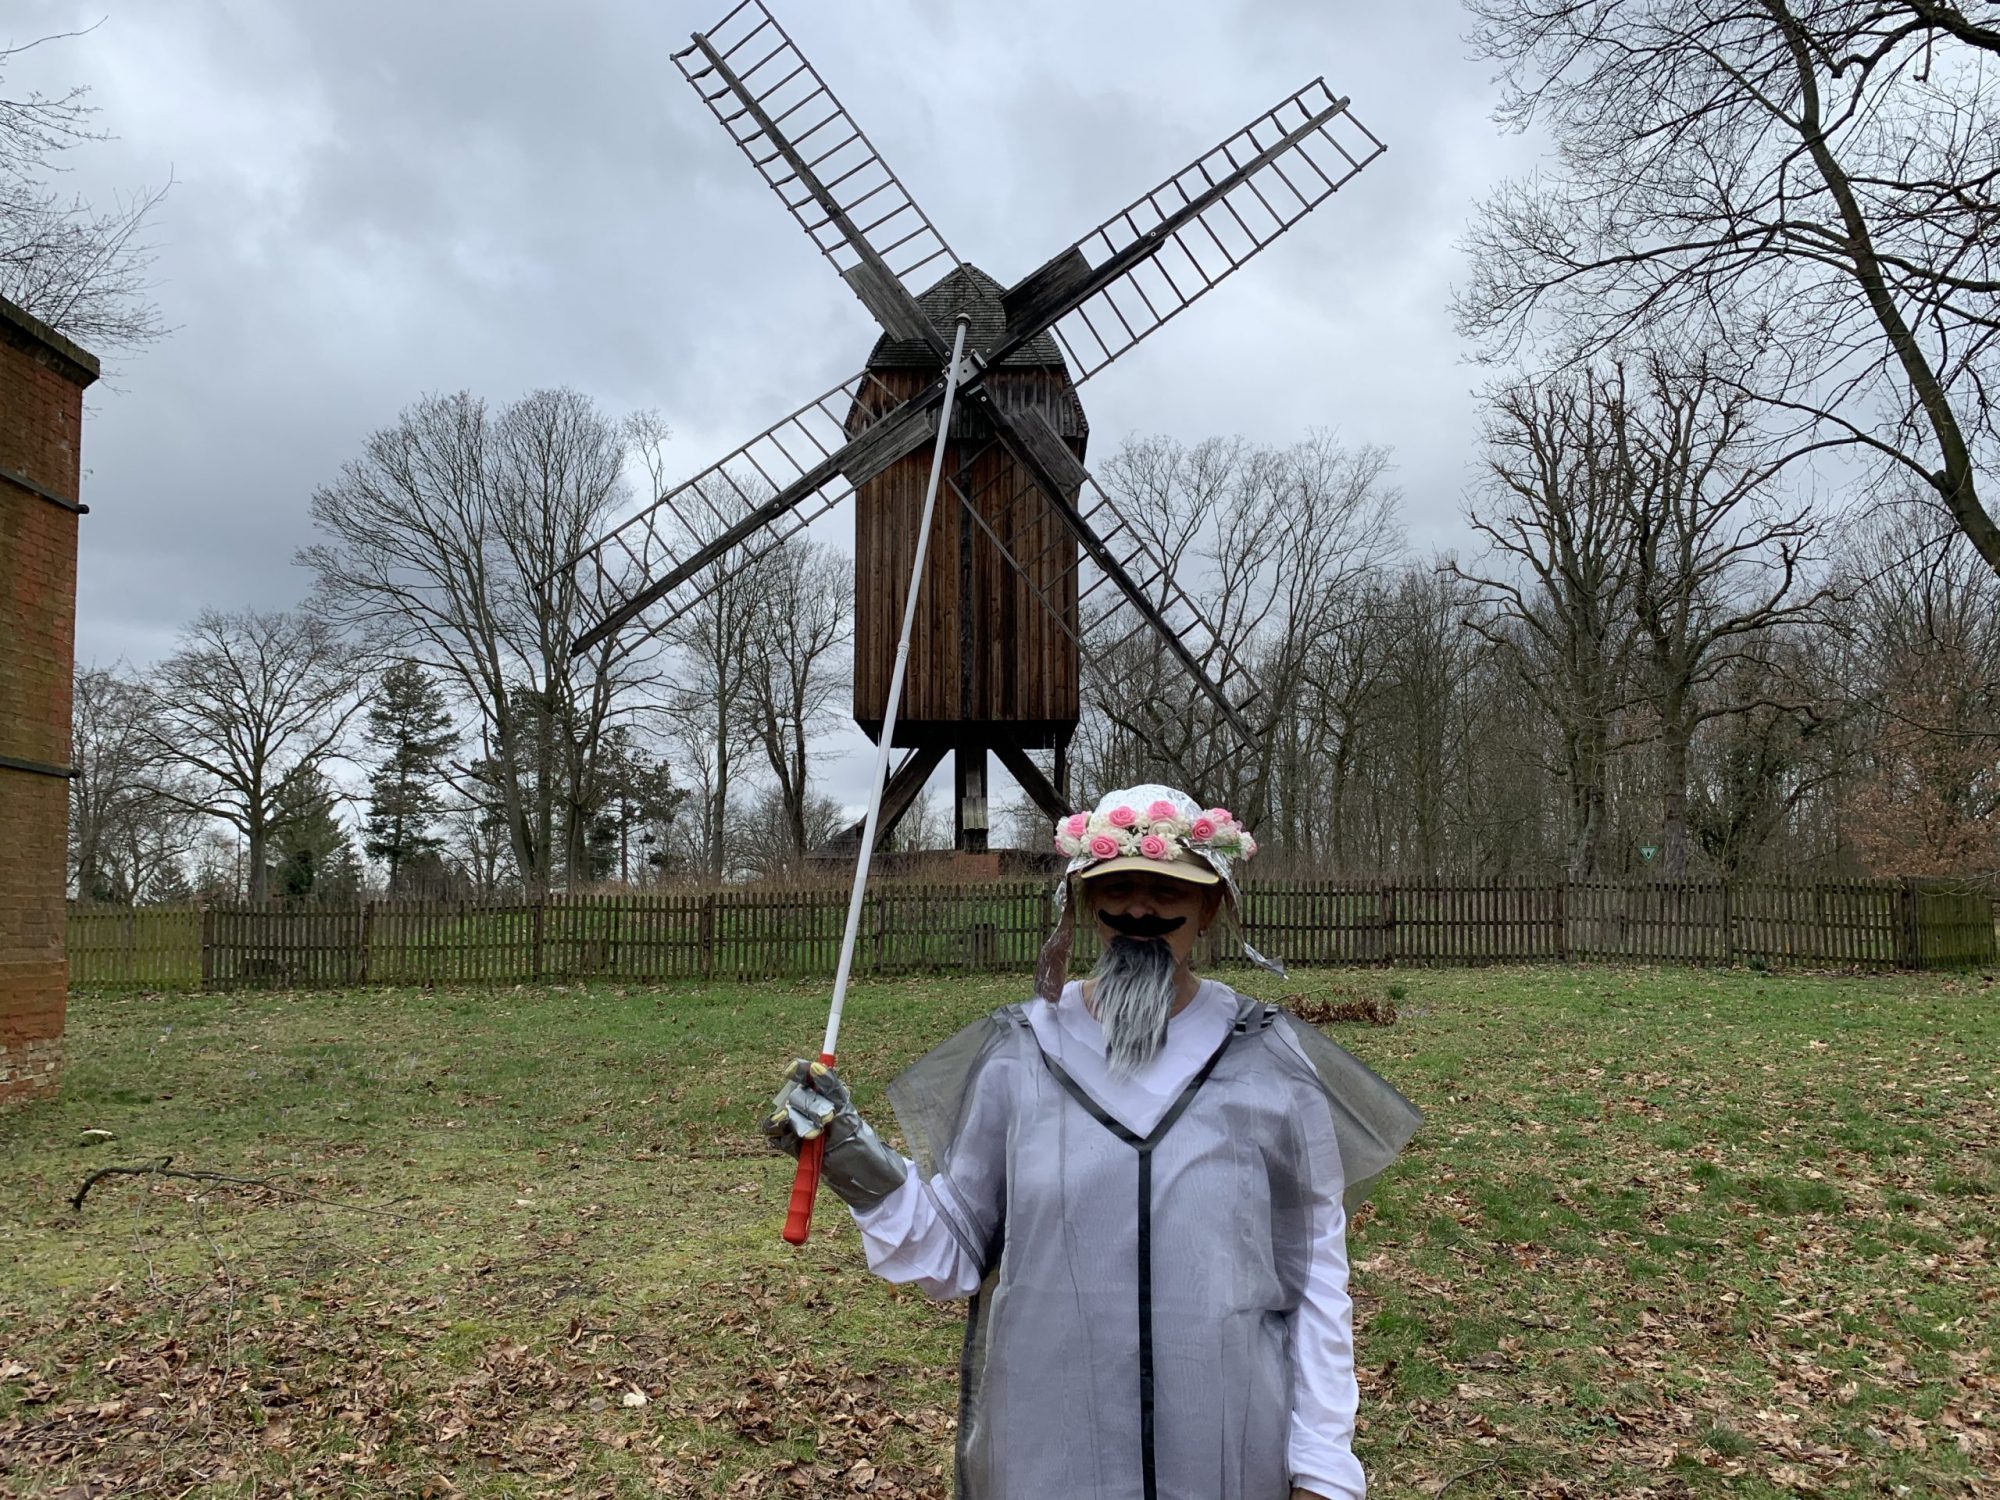 Die Blindgängerin verkleidet als Don Quijote auf einer Wiese. Sie trägt einen Hut aus Alufolie mit einem Blütenkranz und hat einen grauen Bart. Ihren weißen Langstock hält sie empor, im Hintergrund eine Windmühle auf einem Grashügel.